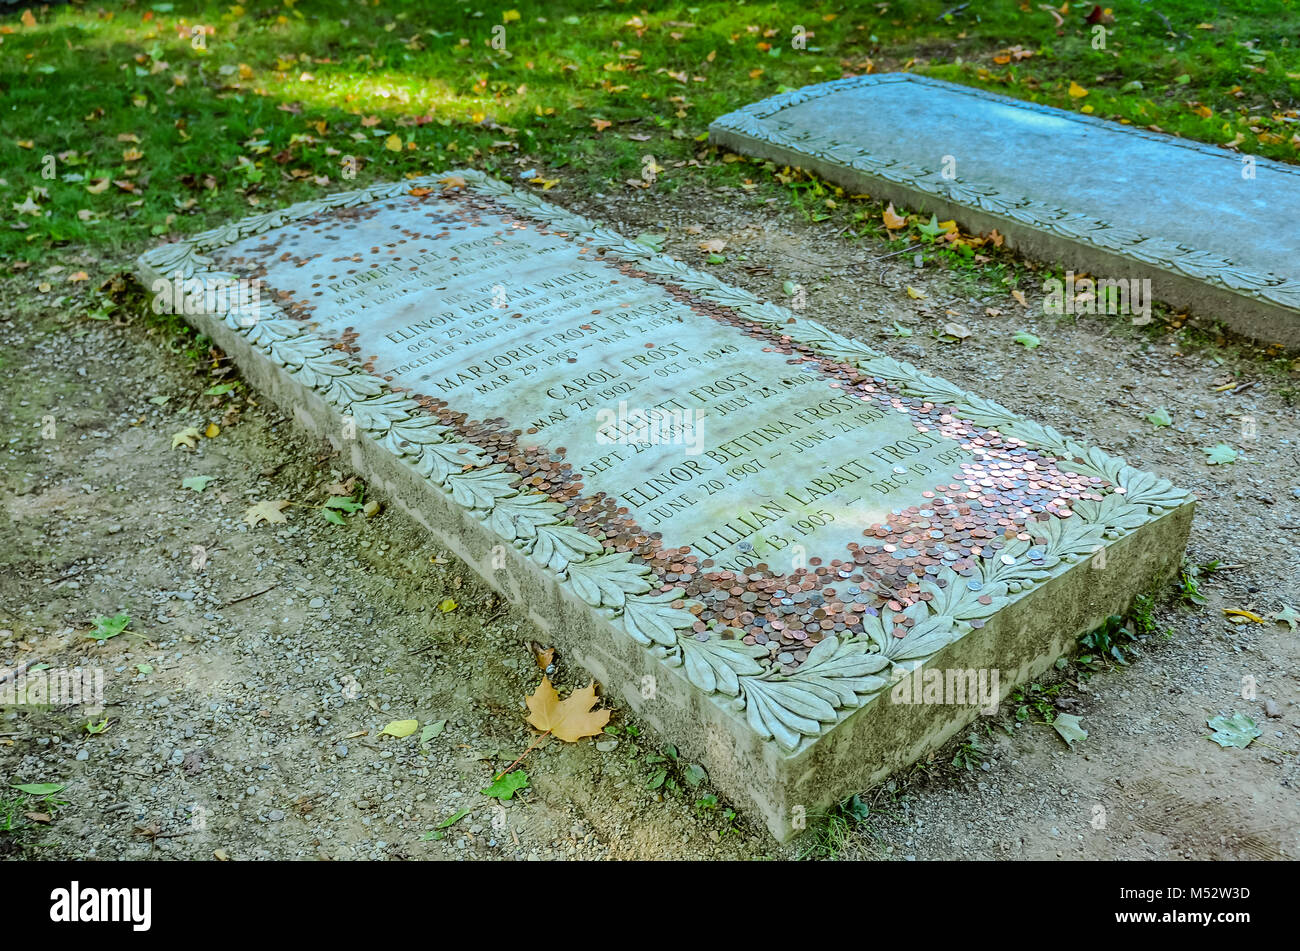 Poeta americano Laureate Robert Frost i resti sono sepolti nel cimitero accanto alla vecchia chiesa prima in Bennington, Vermont. Foto Stock